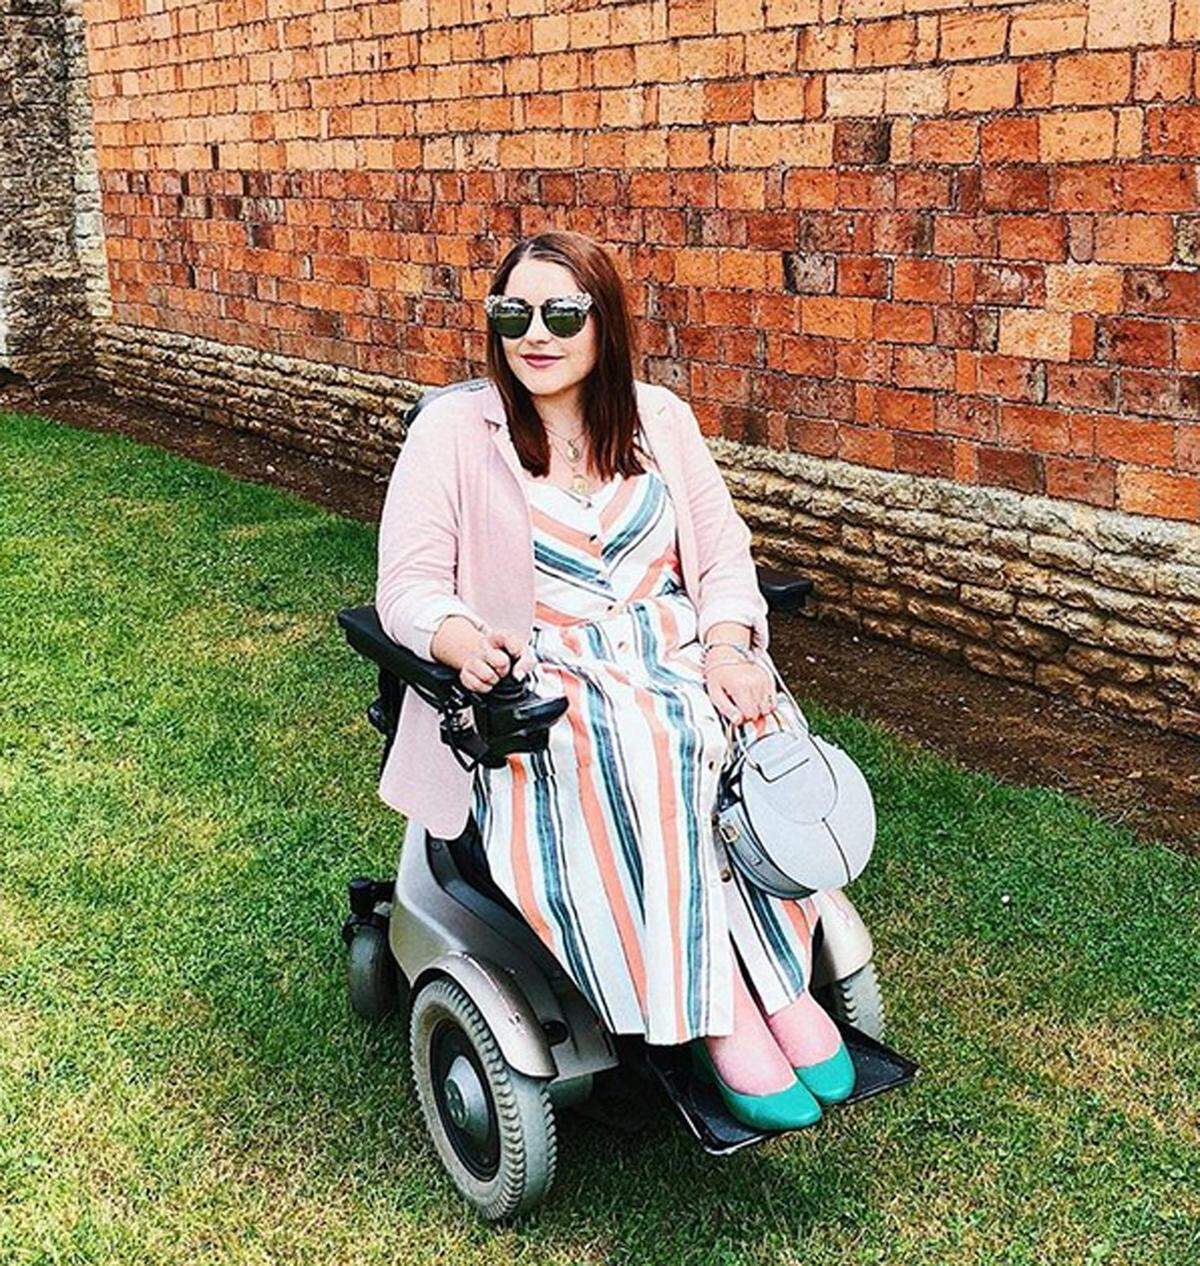 Die 30-jährige Bloggerin, die aufgrund einer spinalen Muskelatrophie im Rollstuhl sitzt, will zeigen, dass man auch als Rollstuhlfahrerin nicht auf modische Outfits verzichten muss.